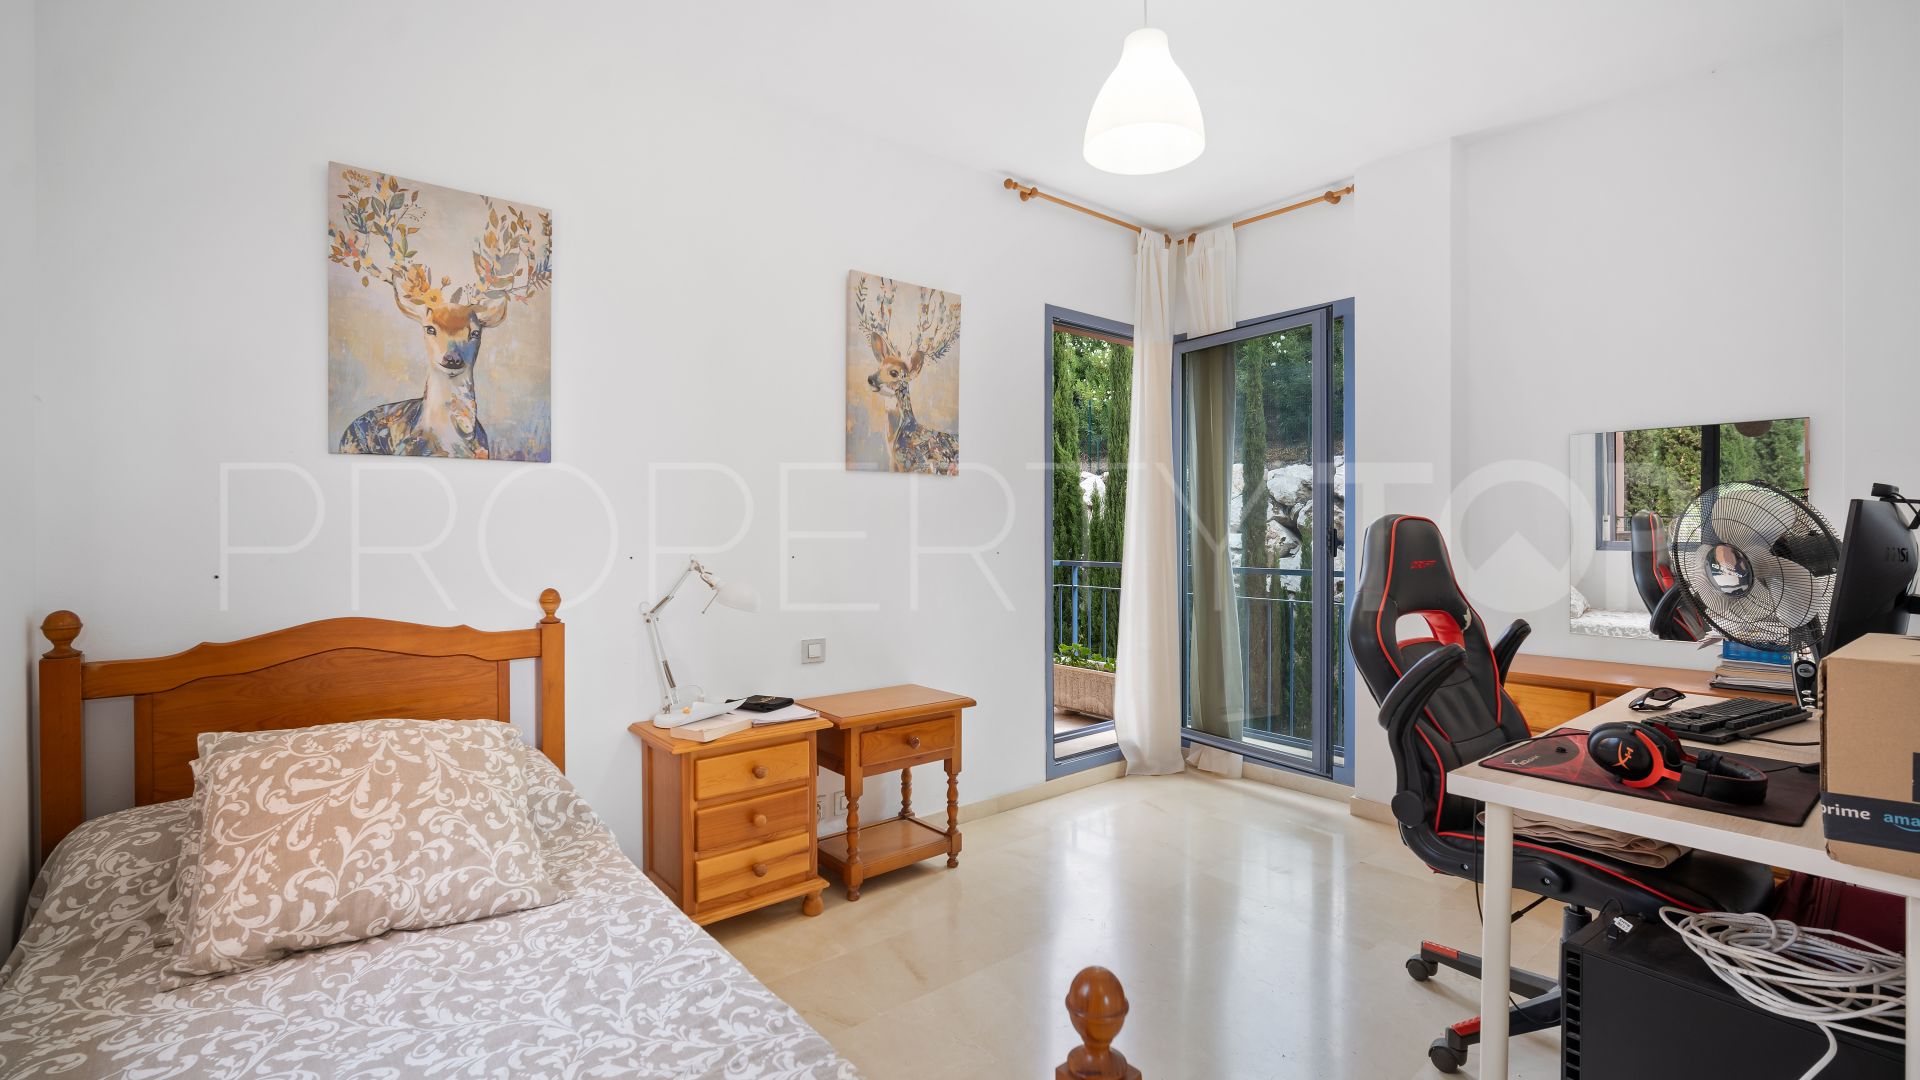 Nueva Andalucia, adosado en venta con 5 dormitorios